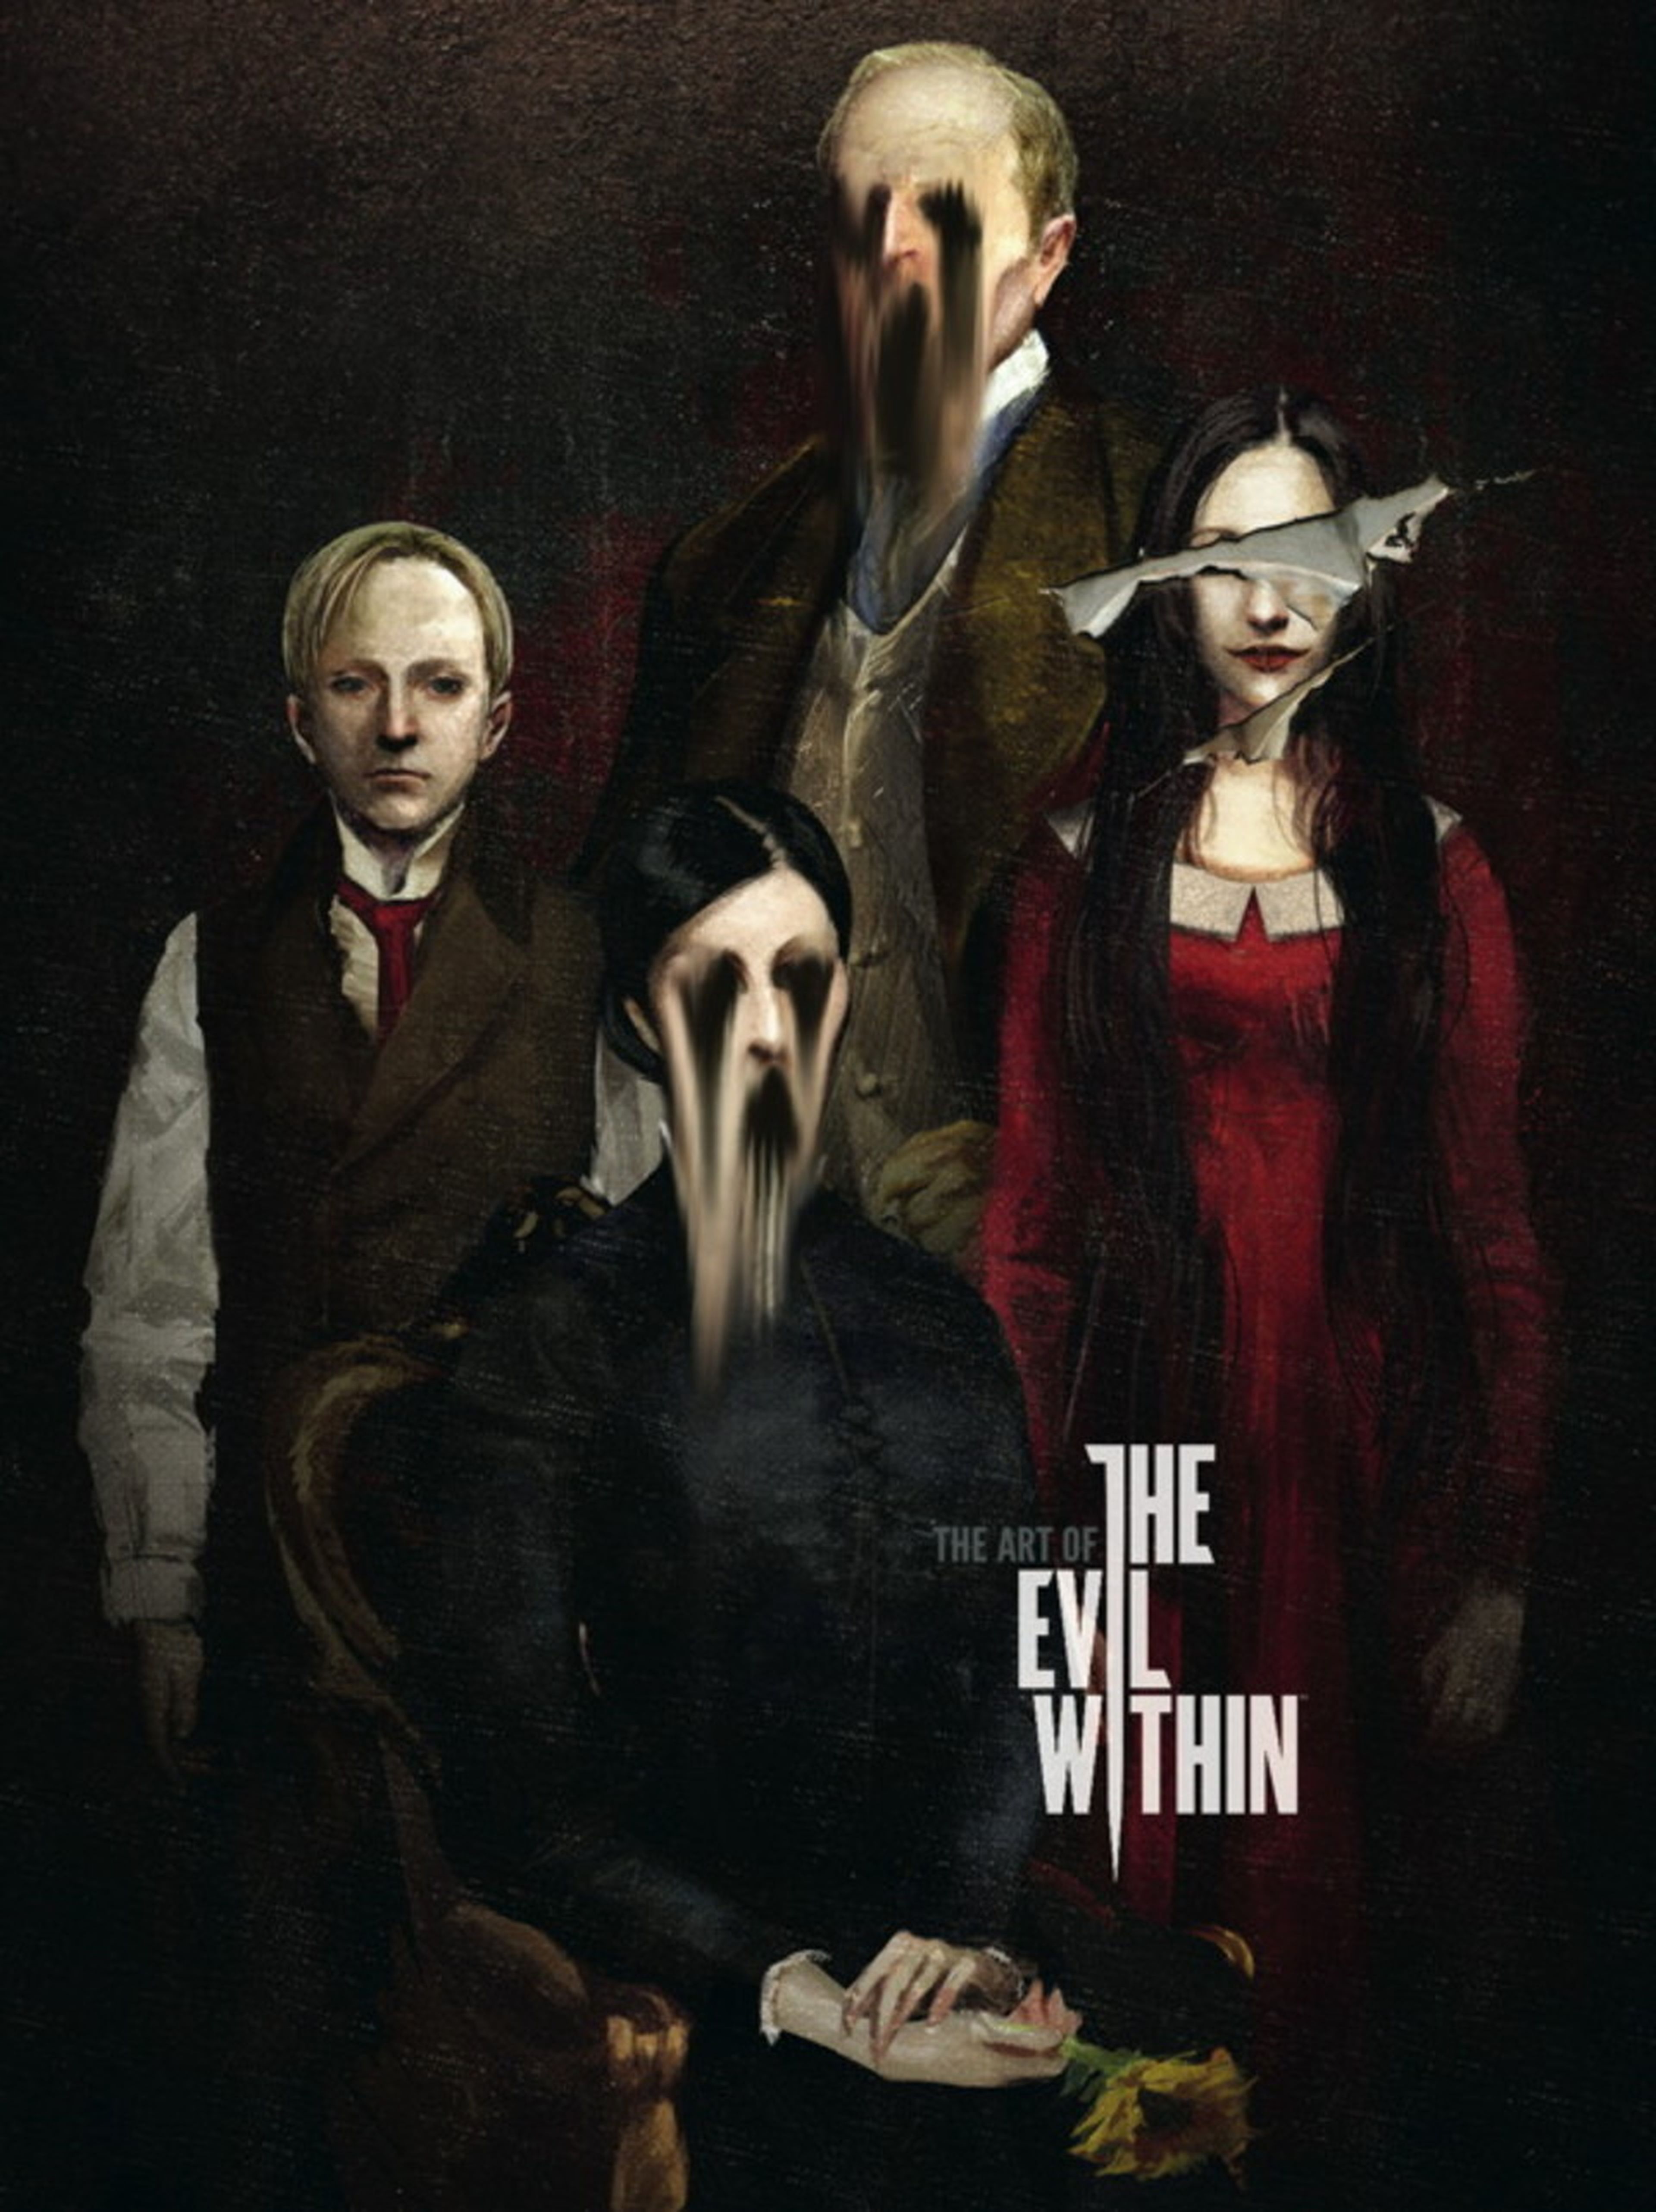 Primeras imágenes del libro de arte de The Evil Within